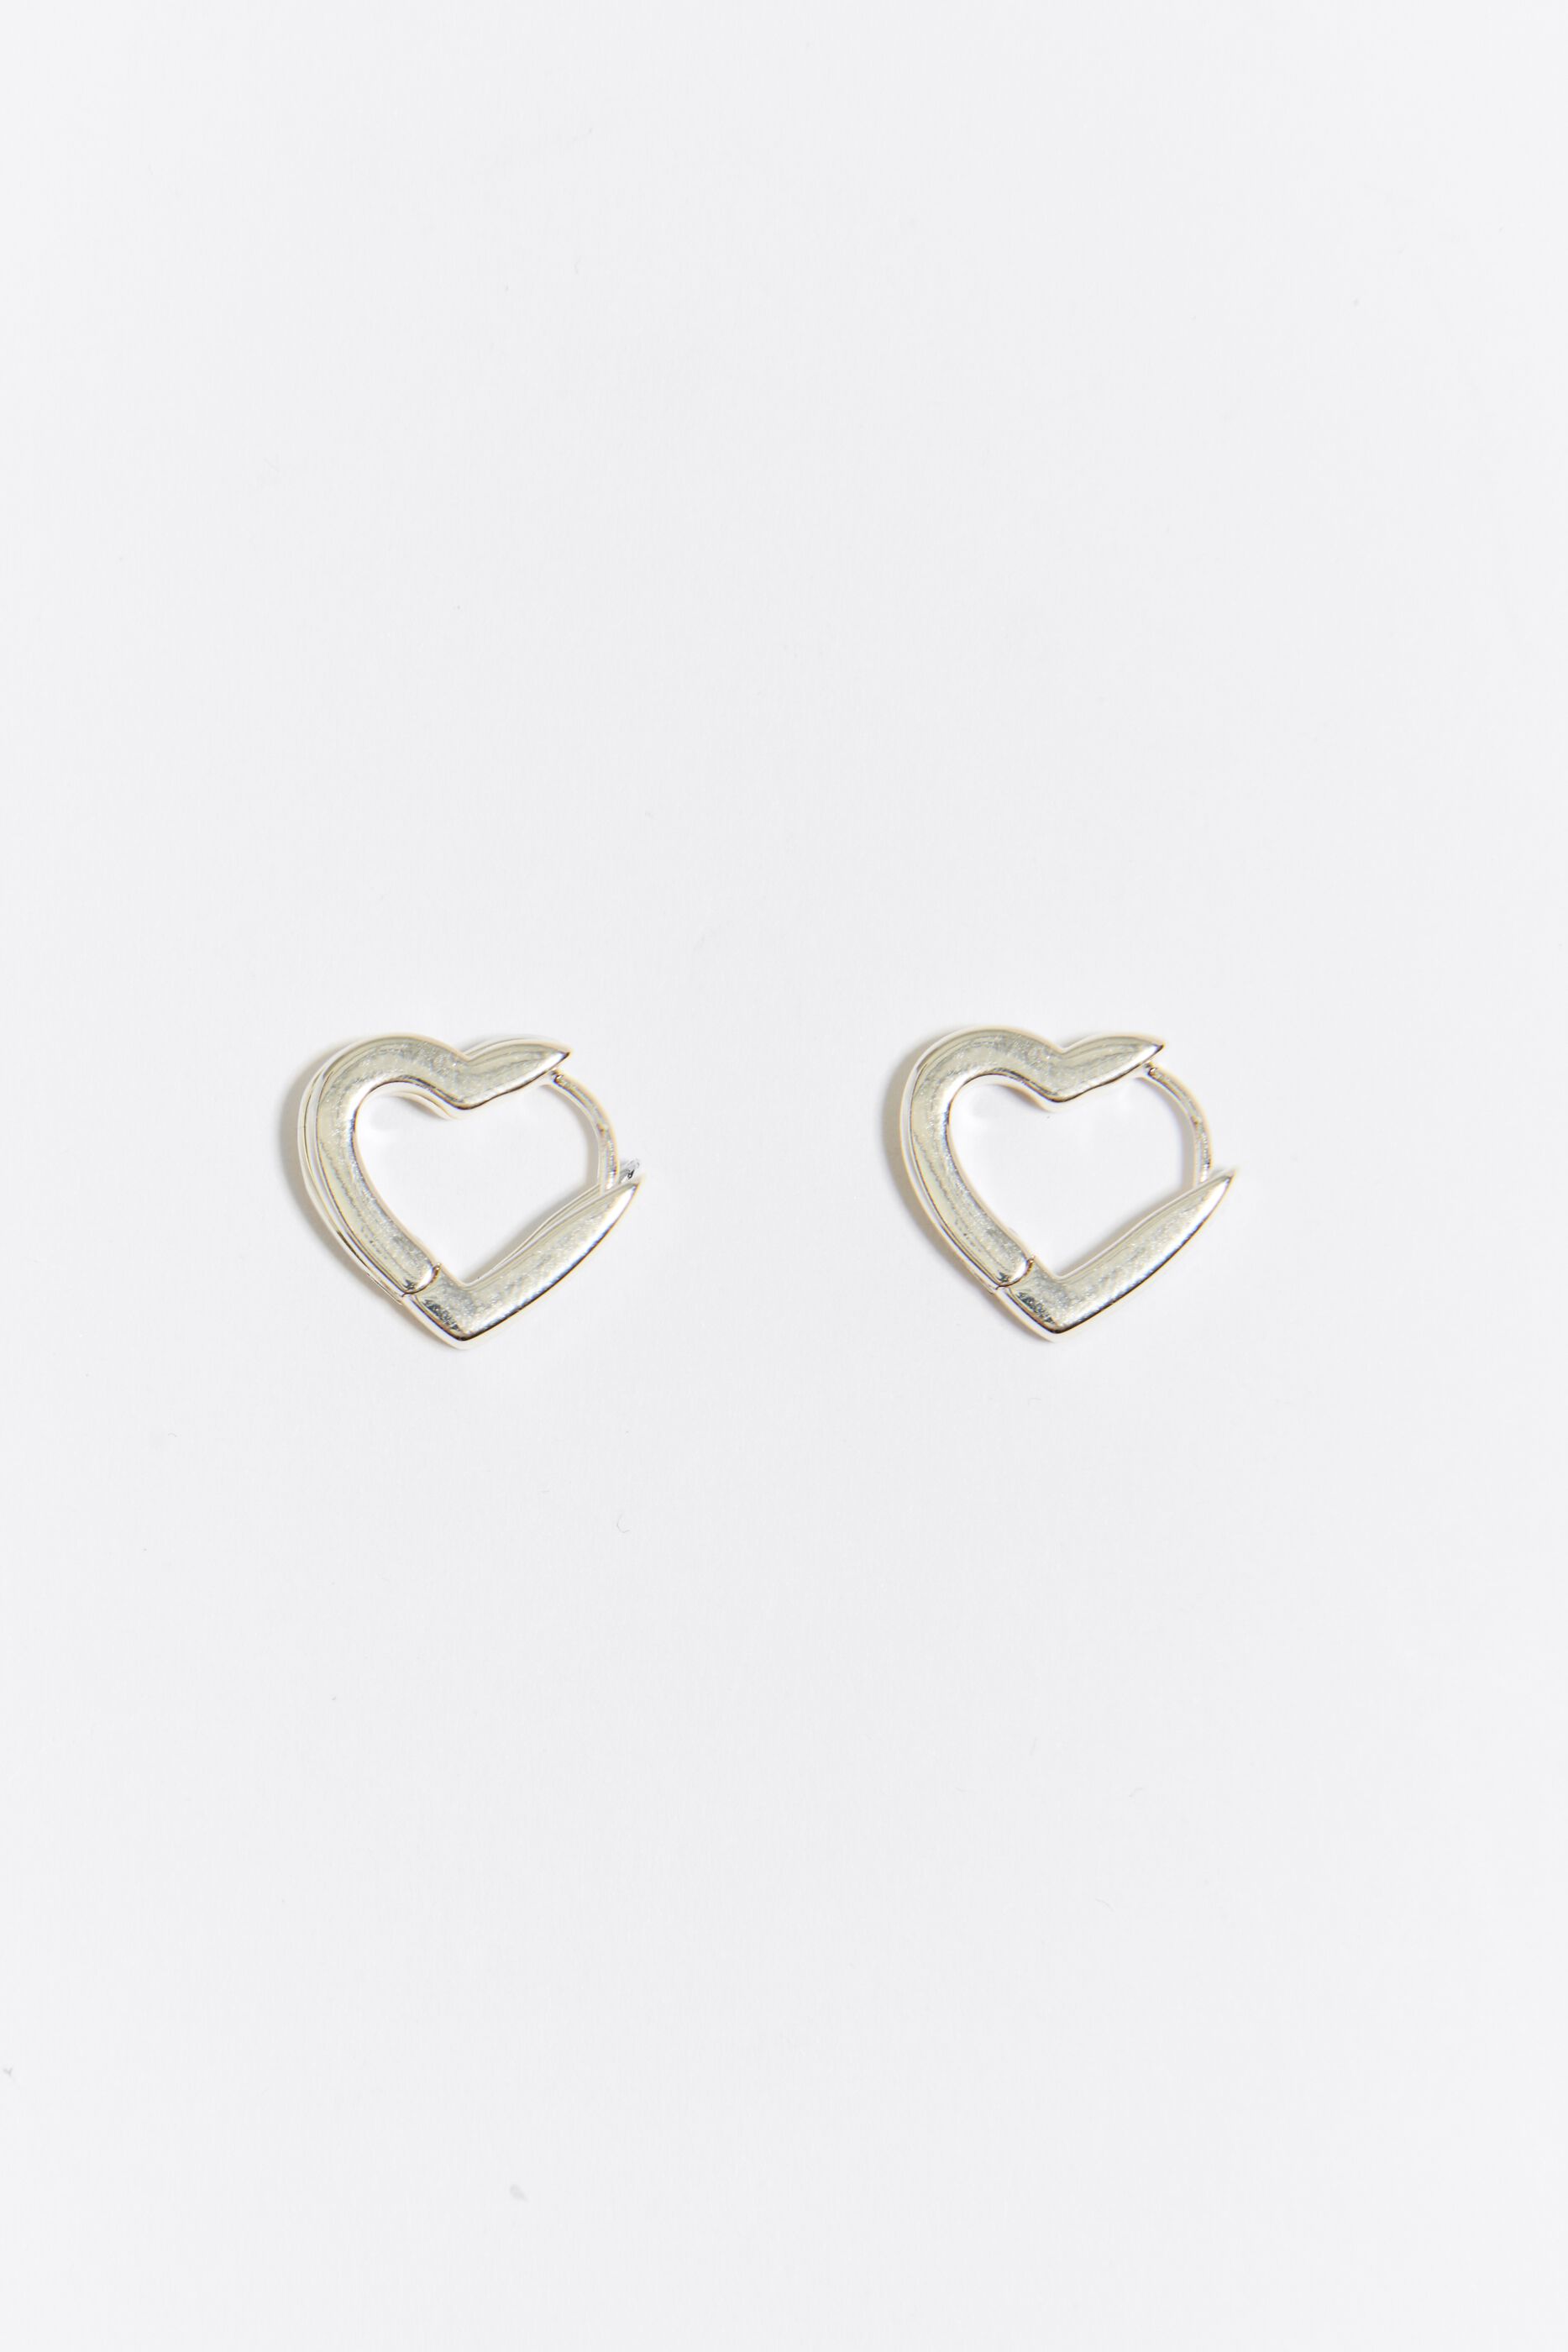 Shop Designer Sterling Silver Heart Talisman Earrings Online - J.H.  Breakell and Co.